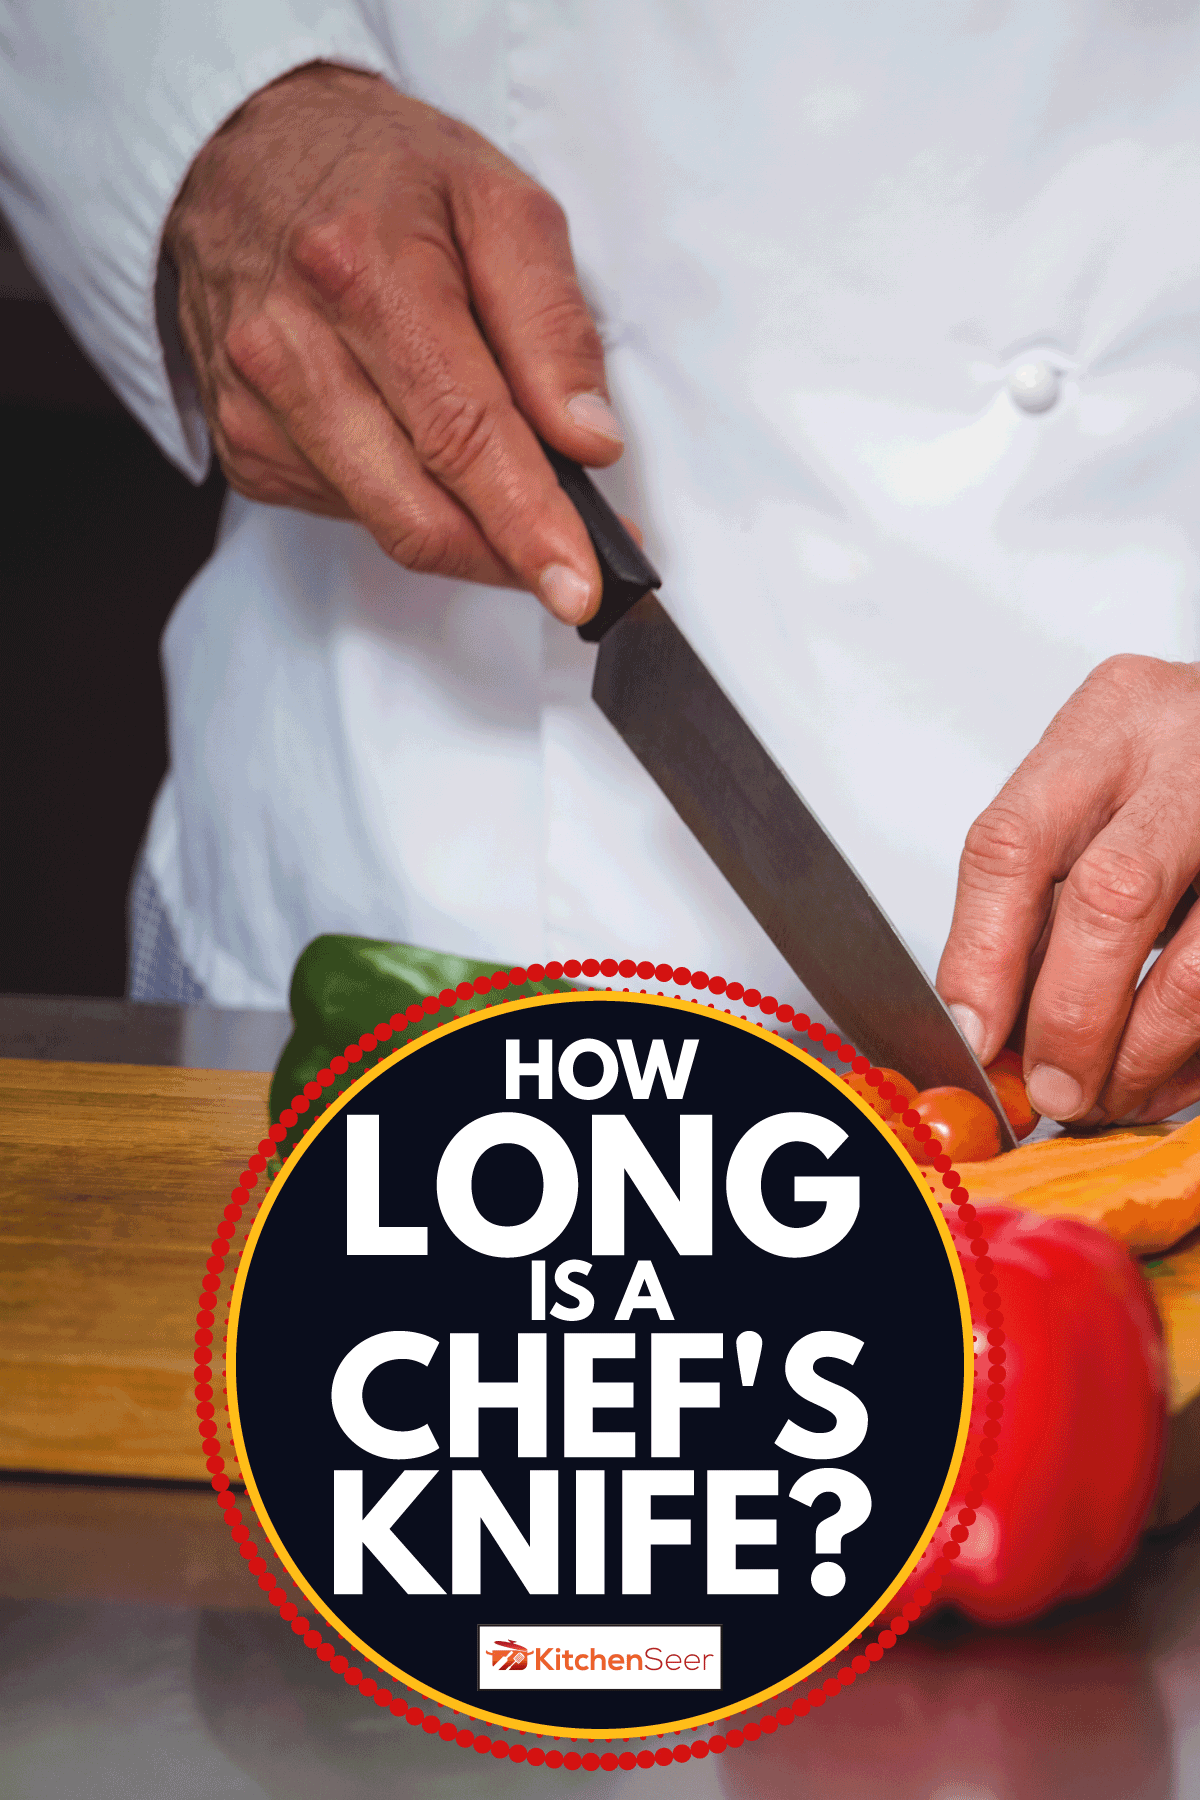 厨师用厨师刀切蔬菜做沙拉。厨师刀有多长